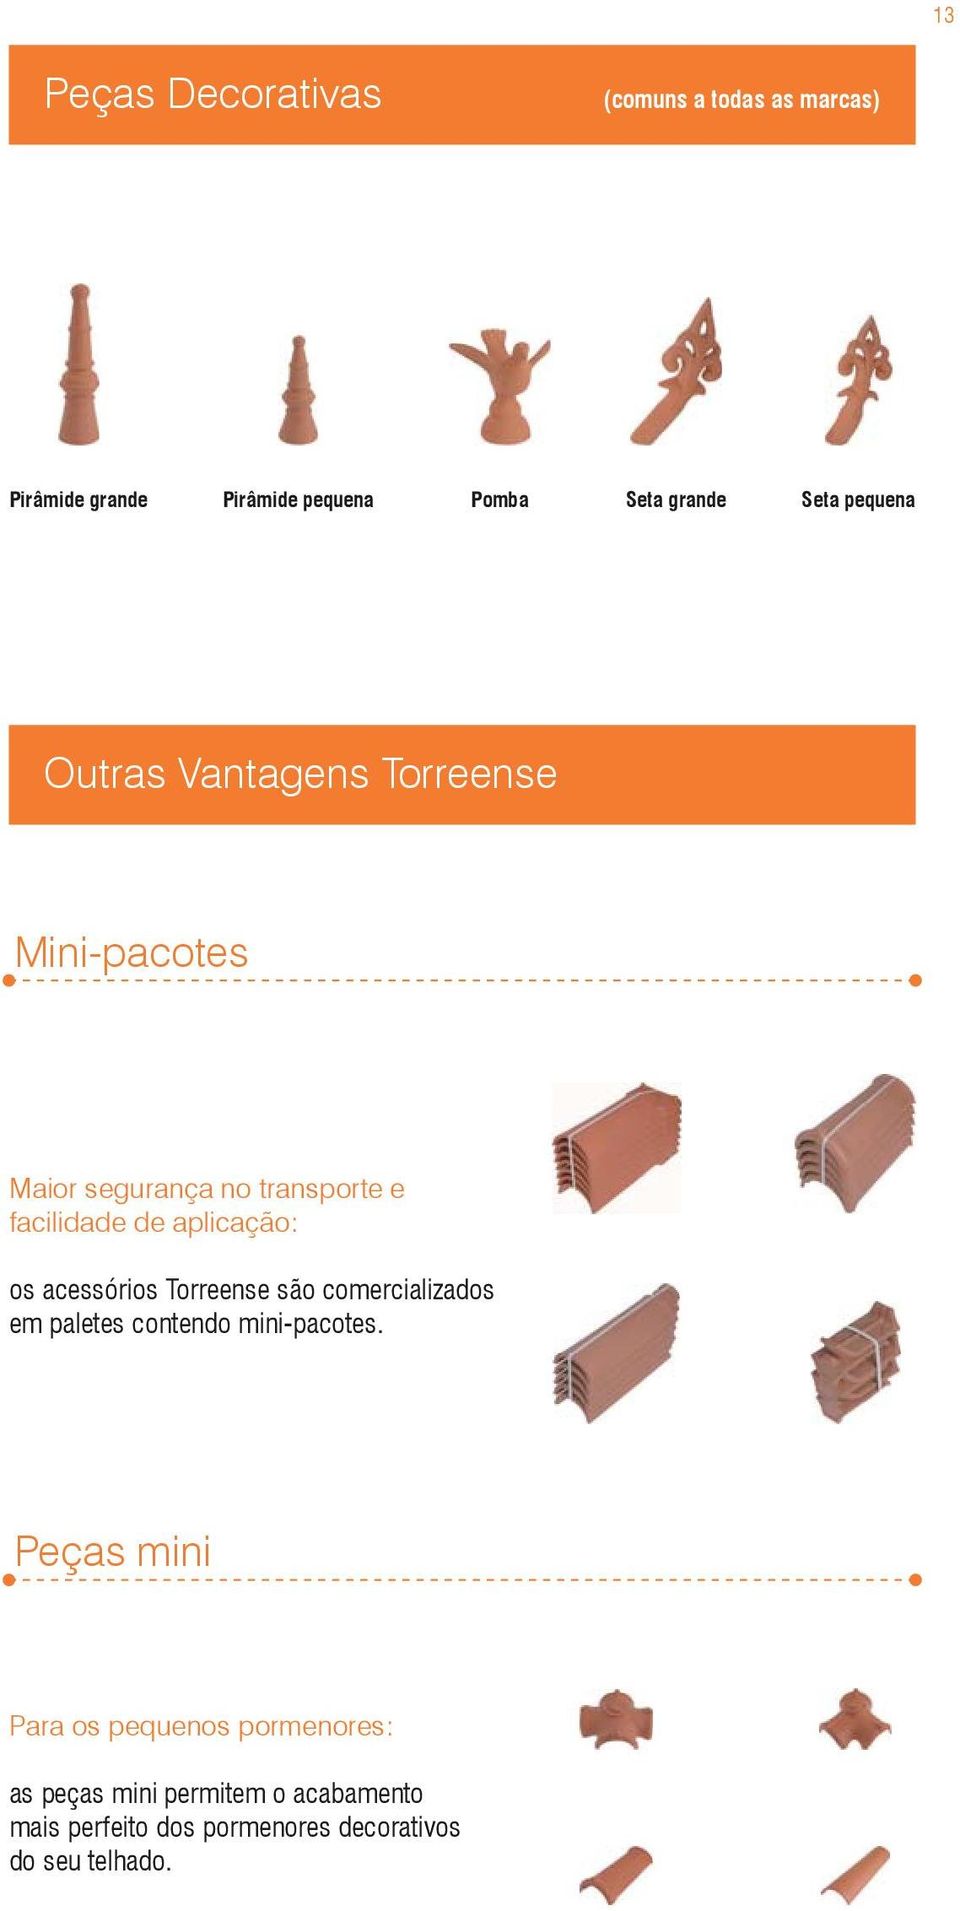 os acessórios Torreense são comercializados em paletes contendo mini-pacotes.